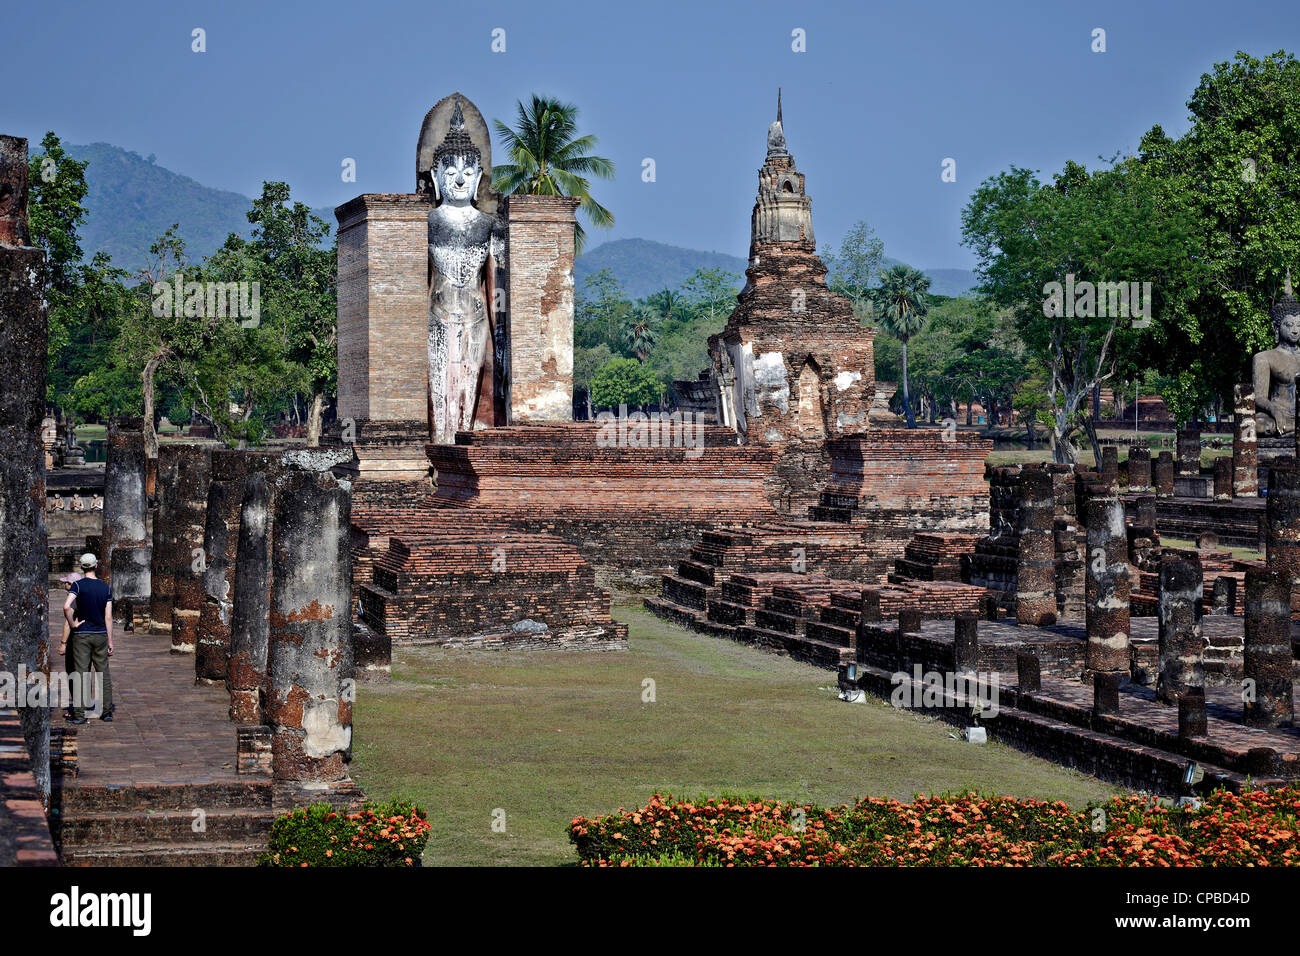 Ruines du temple Wat Mahathat Sukhothai. Capitale de la Thaïlande Royaume dans les 13e et 14e siècles Banque D'Images